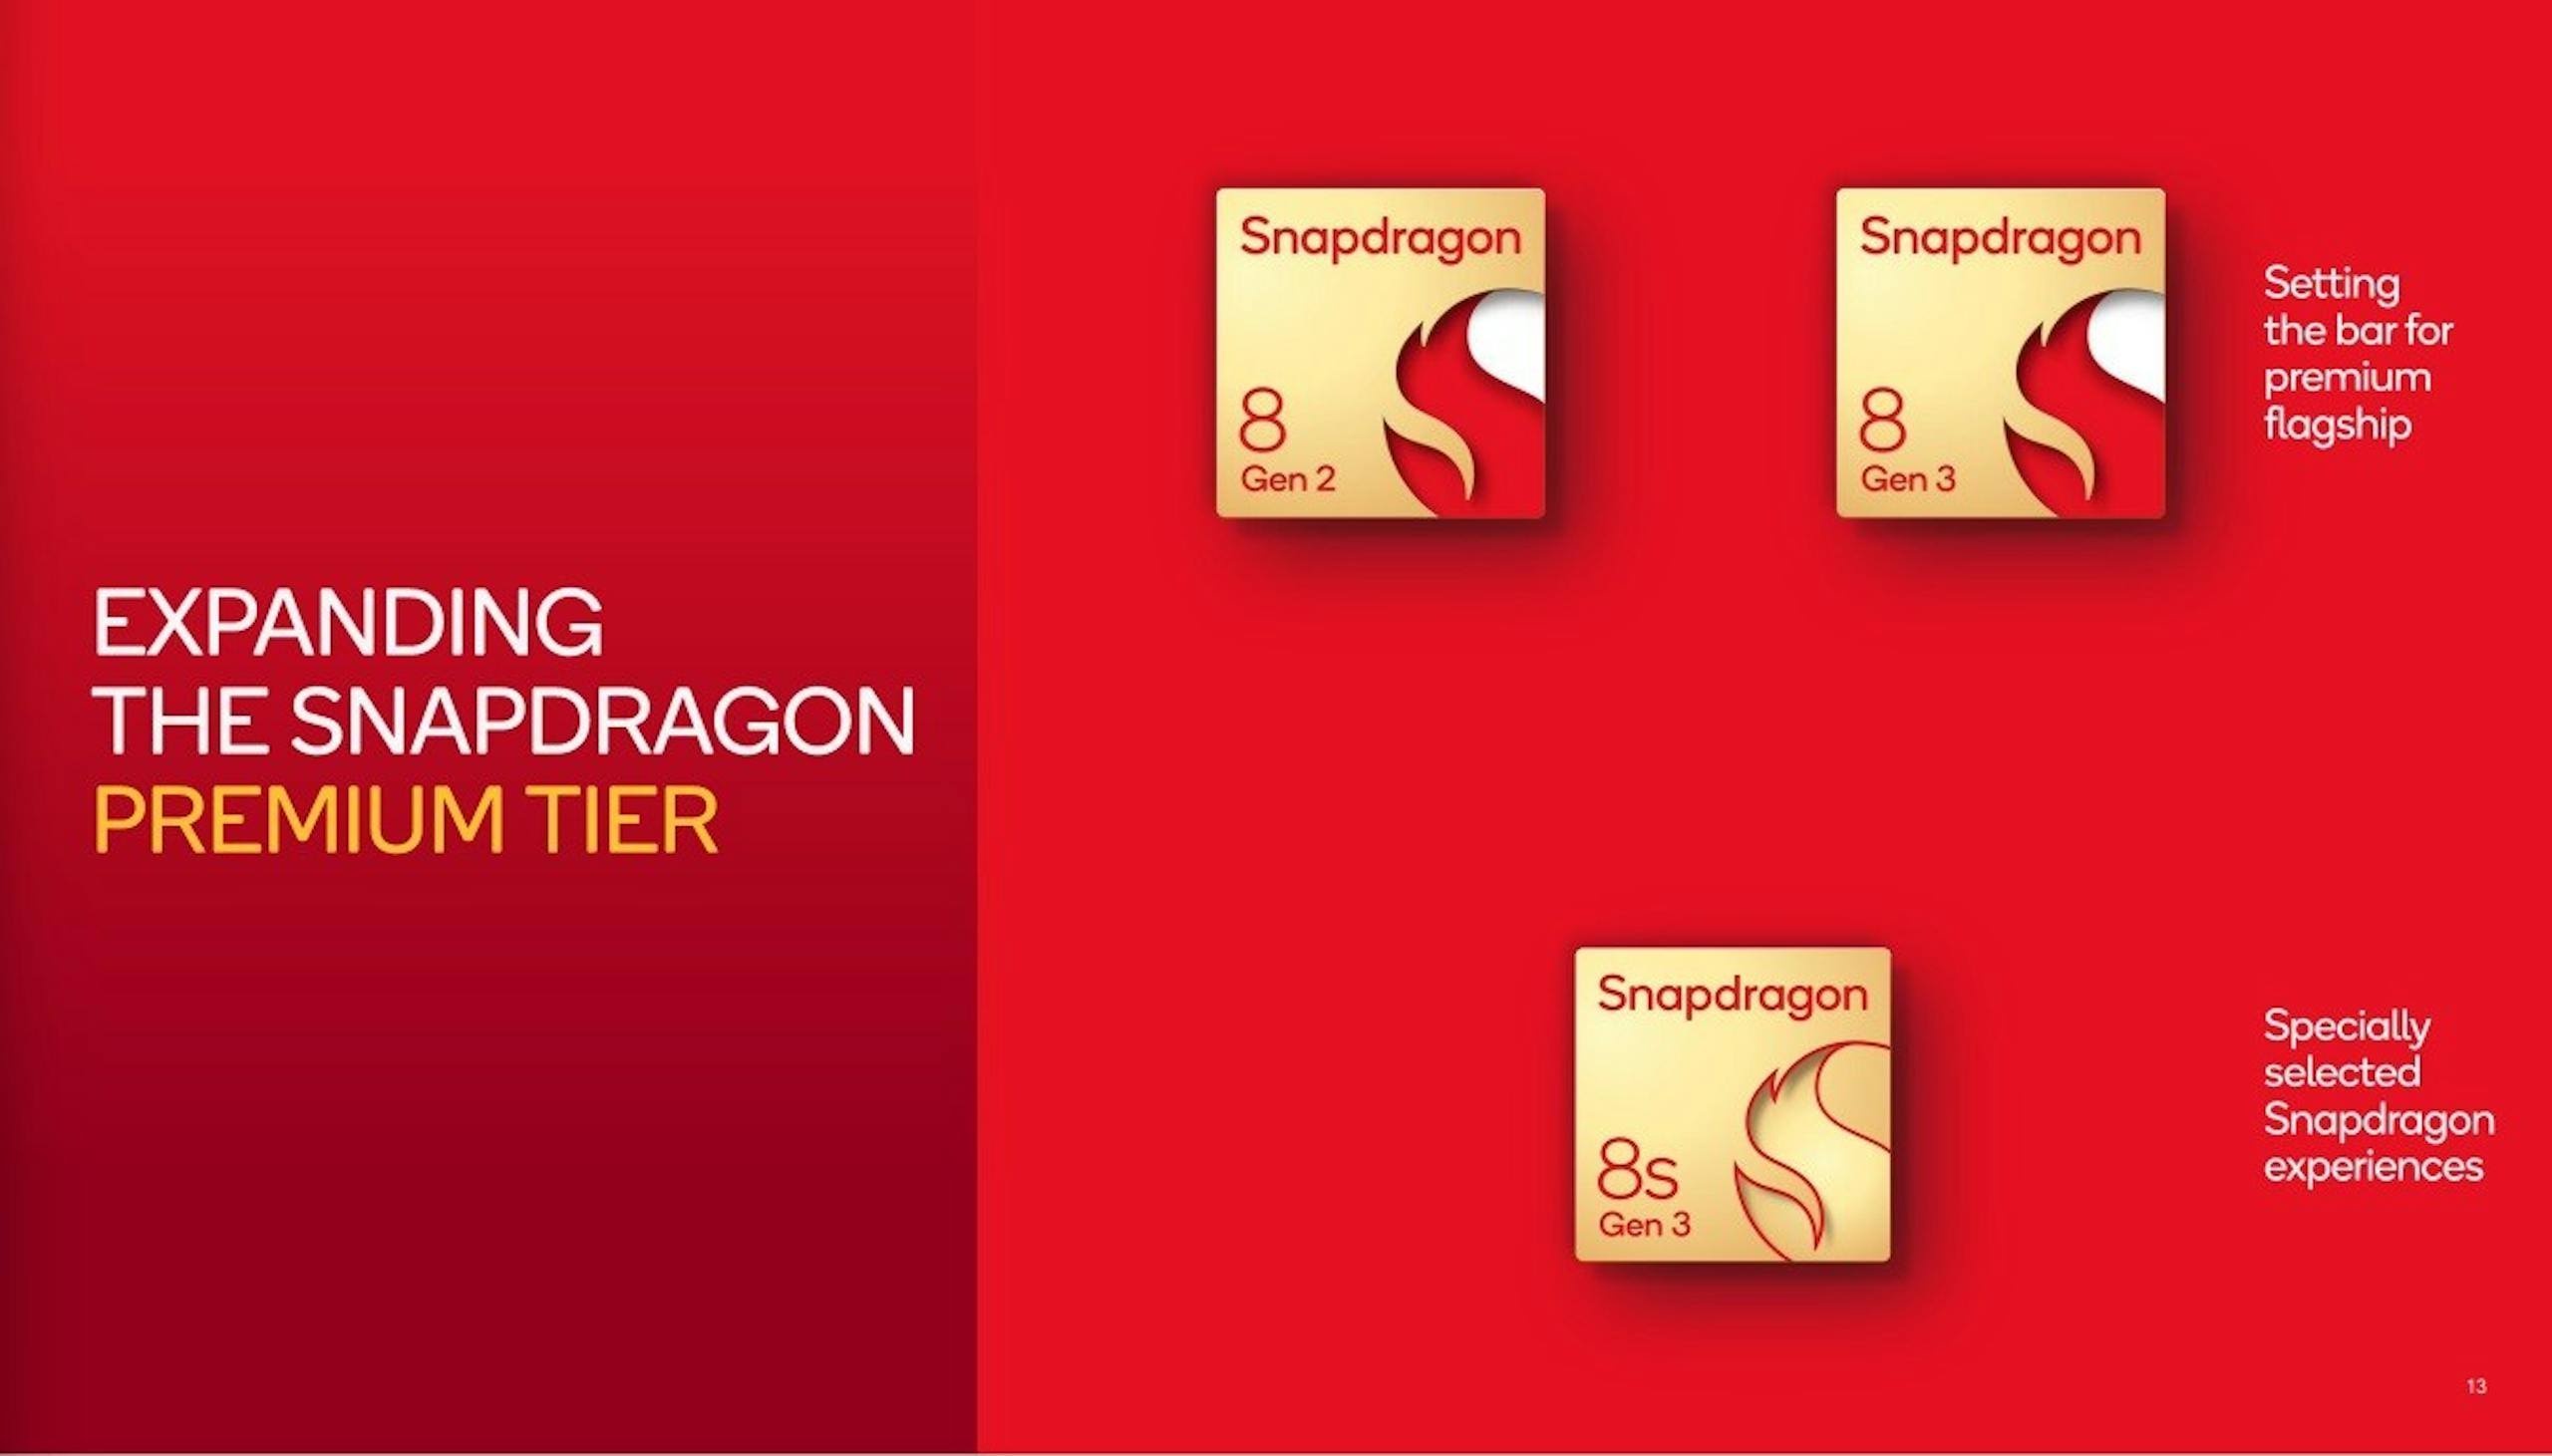 高通再细分Snapdragon 8平台公布Snapdragon 8s Gen 3，扩大边际生成式AI布局、首款商用设备3月推出